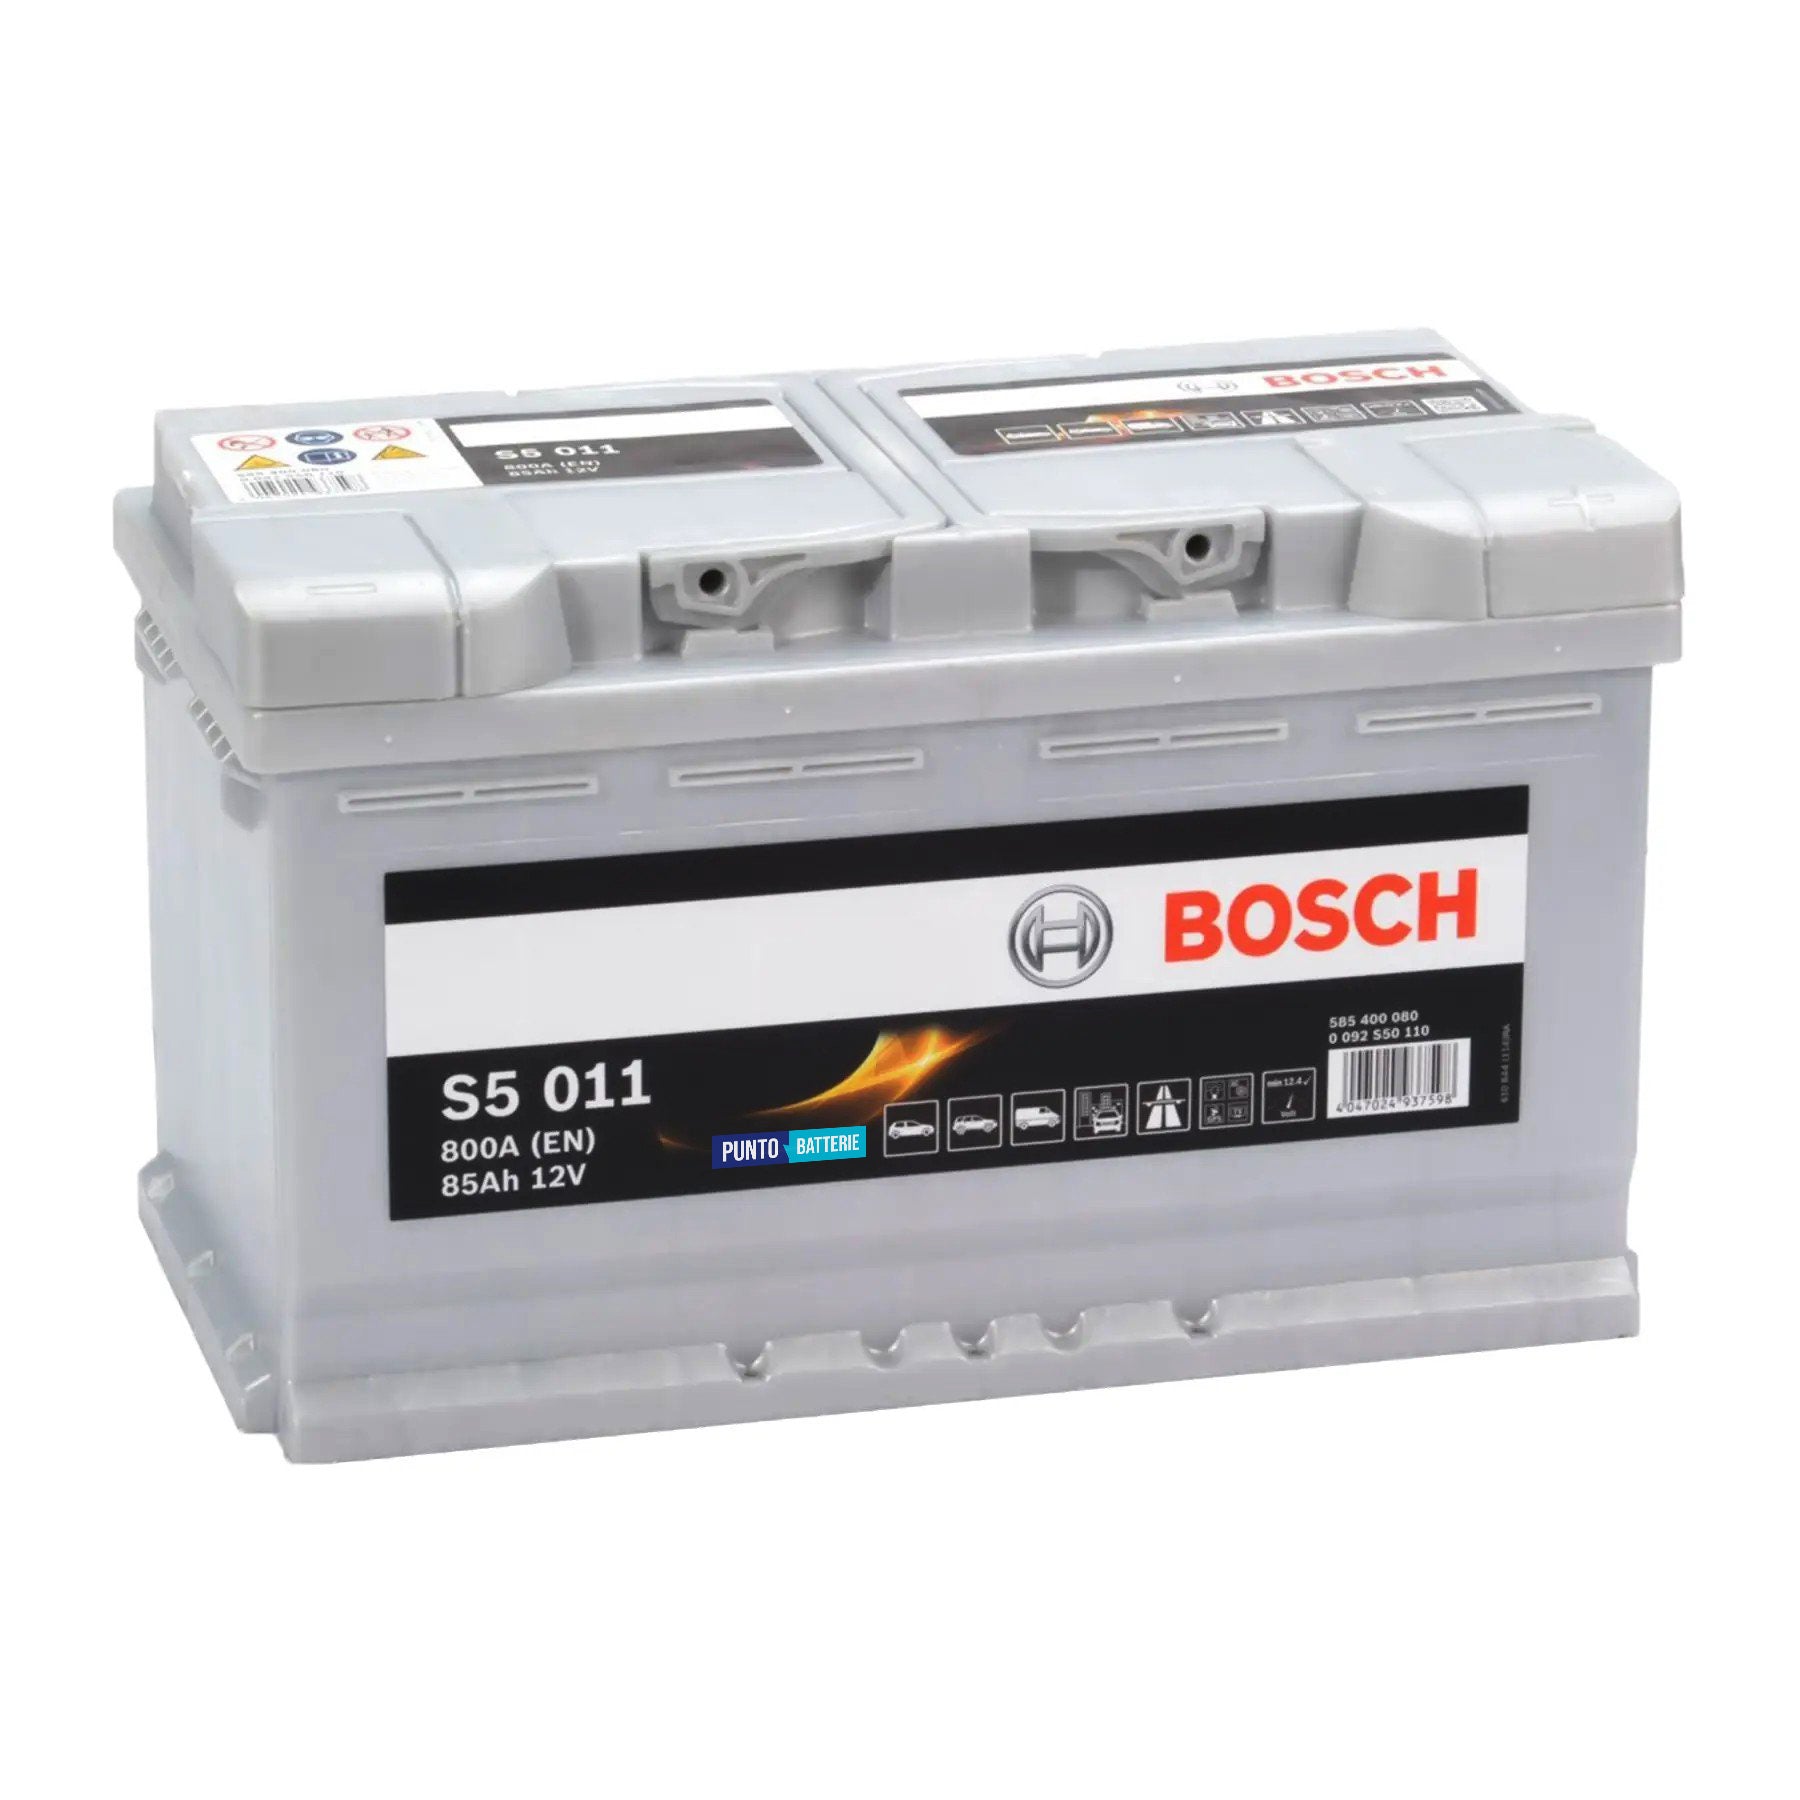 Batteria originale Bosch S5 S5 011, dimensioni 315 x 175 x 190, polo positivo a destra, 12 volt, 85 amperora, 800 ampere. Batteria per auto e veicoli leggeri.